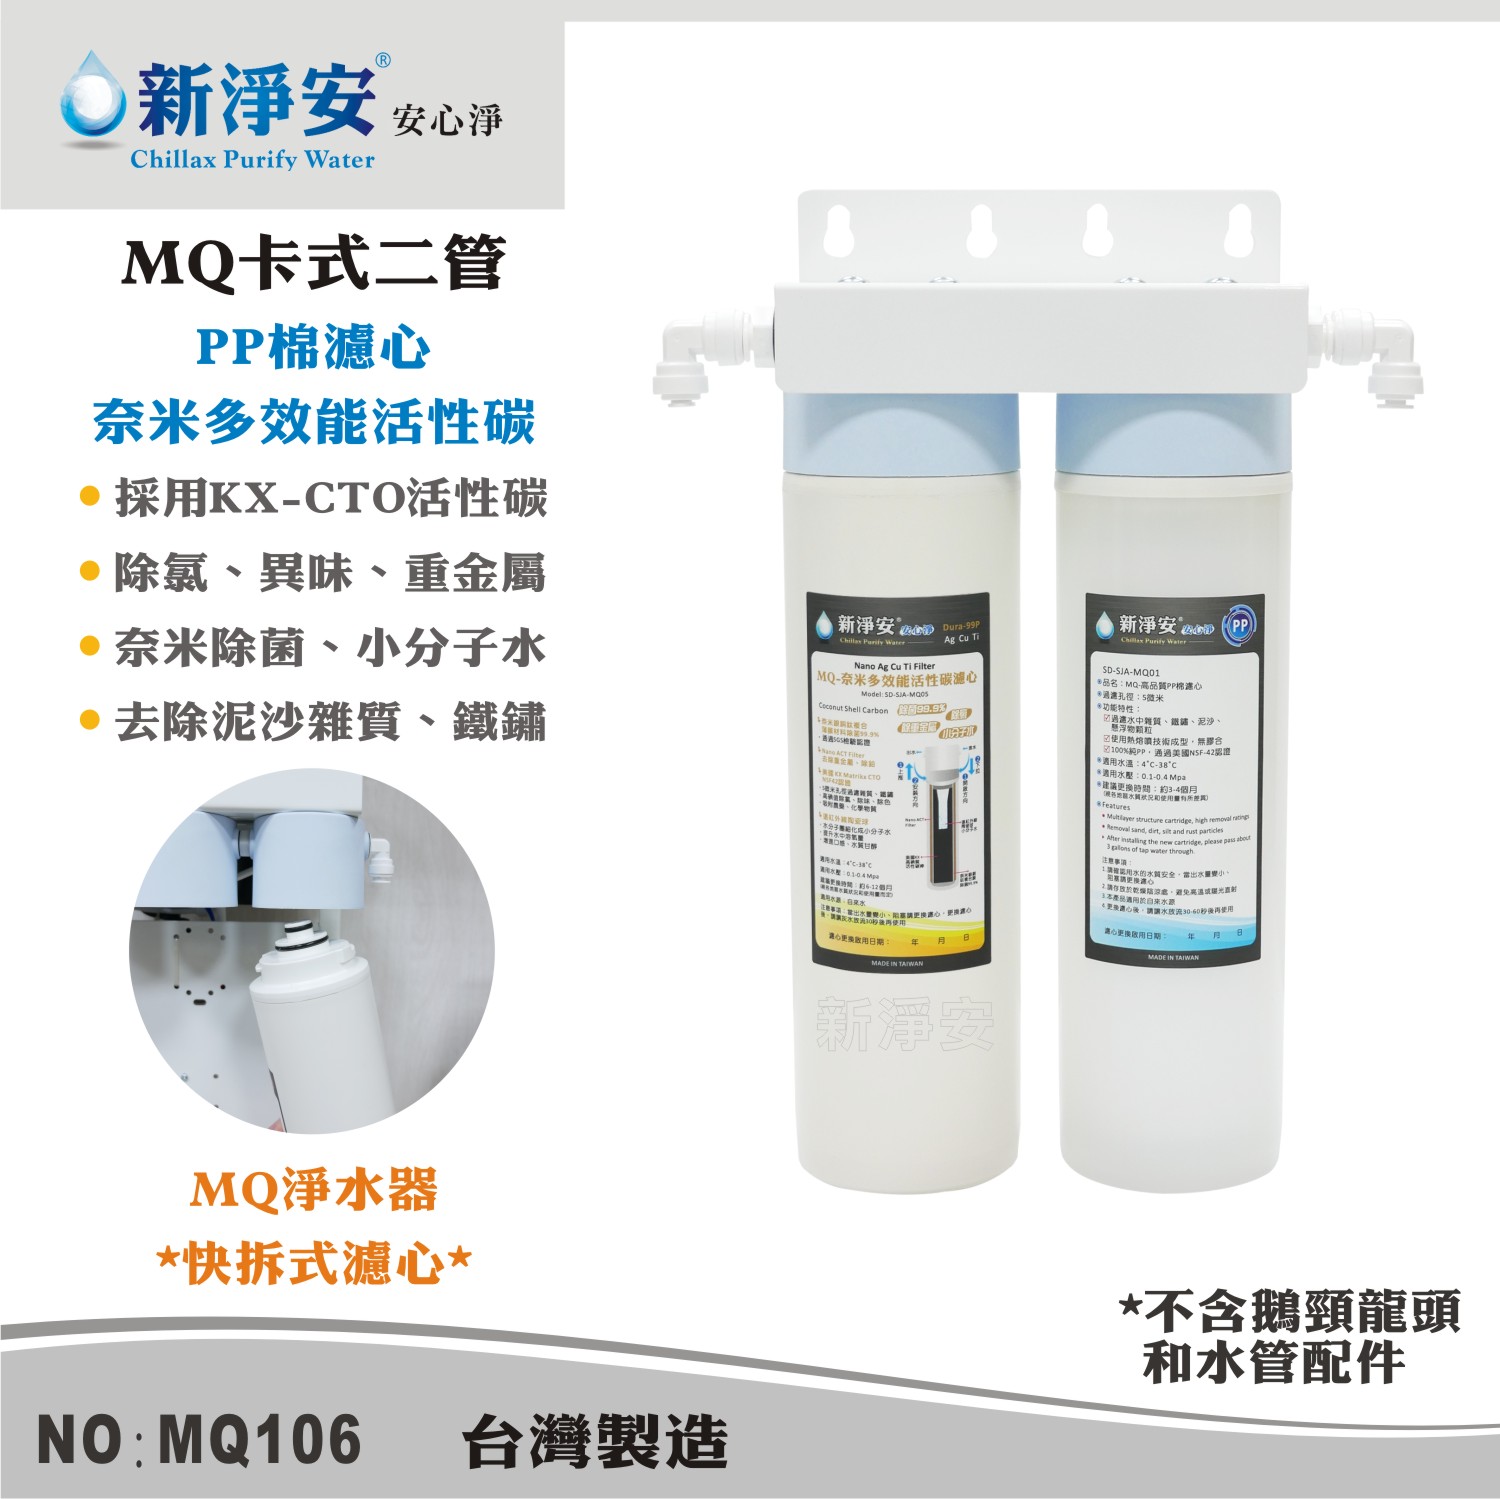 【龍門淨水】MQ快拆卡式二管淨水器 MQ-PP棉5微米+奈米活性碳 除泥沙餘氯 過濾器(MQ106)